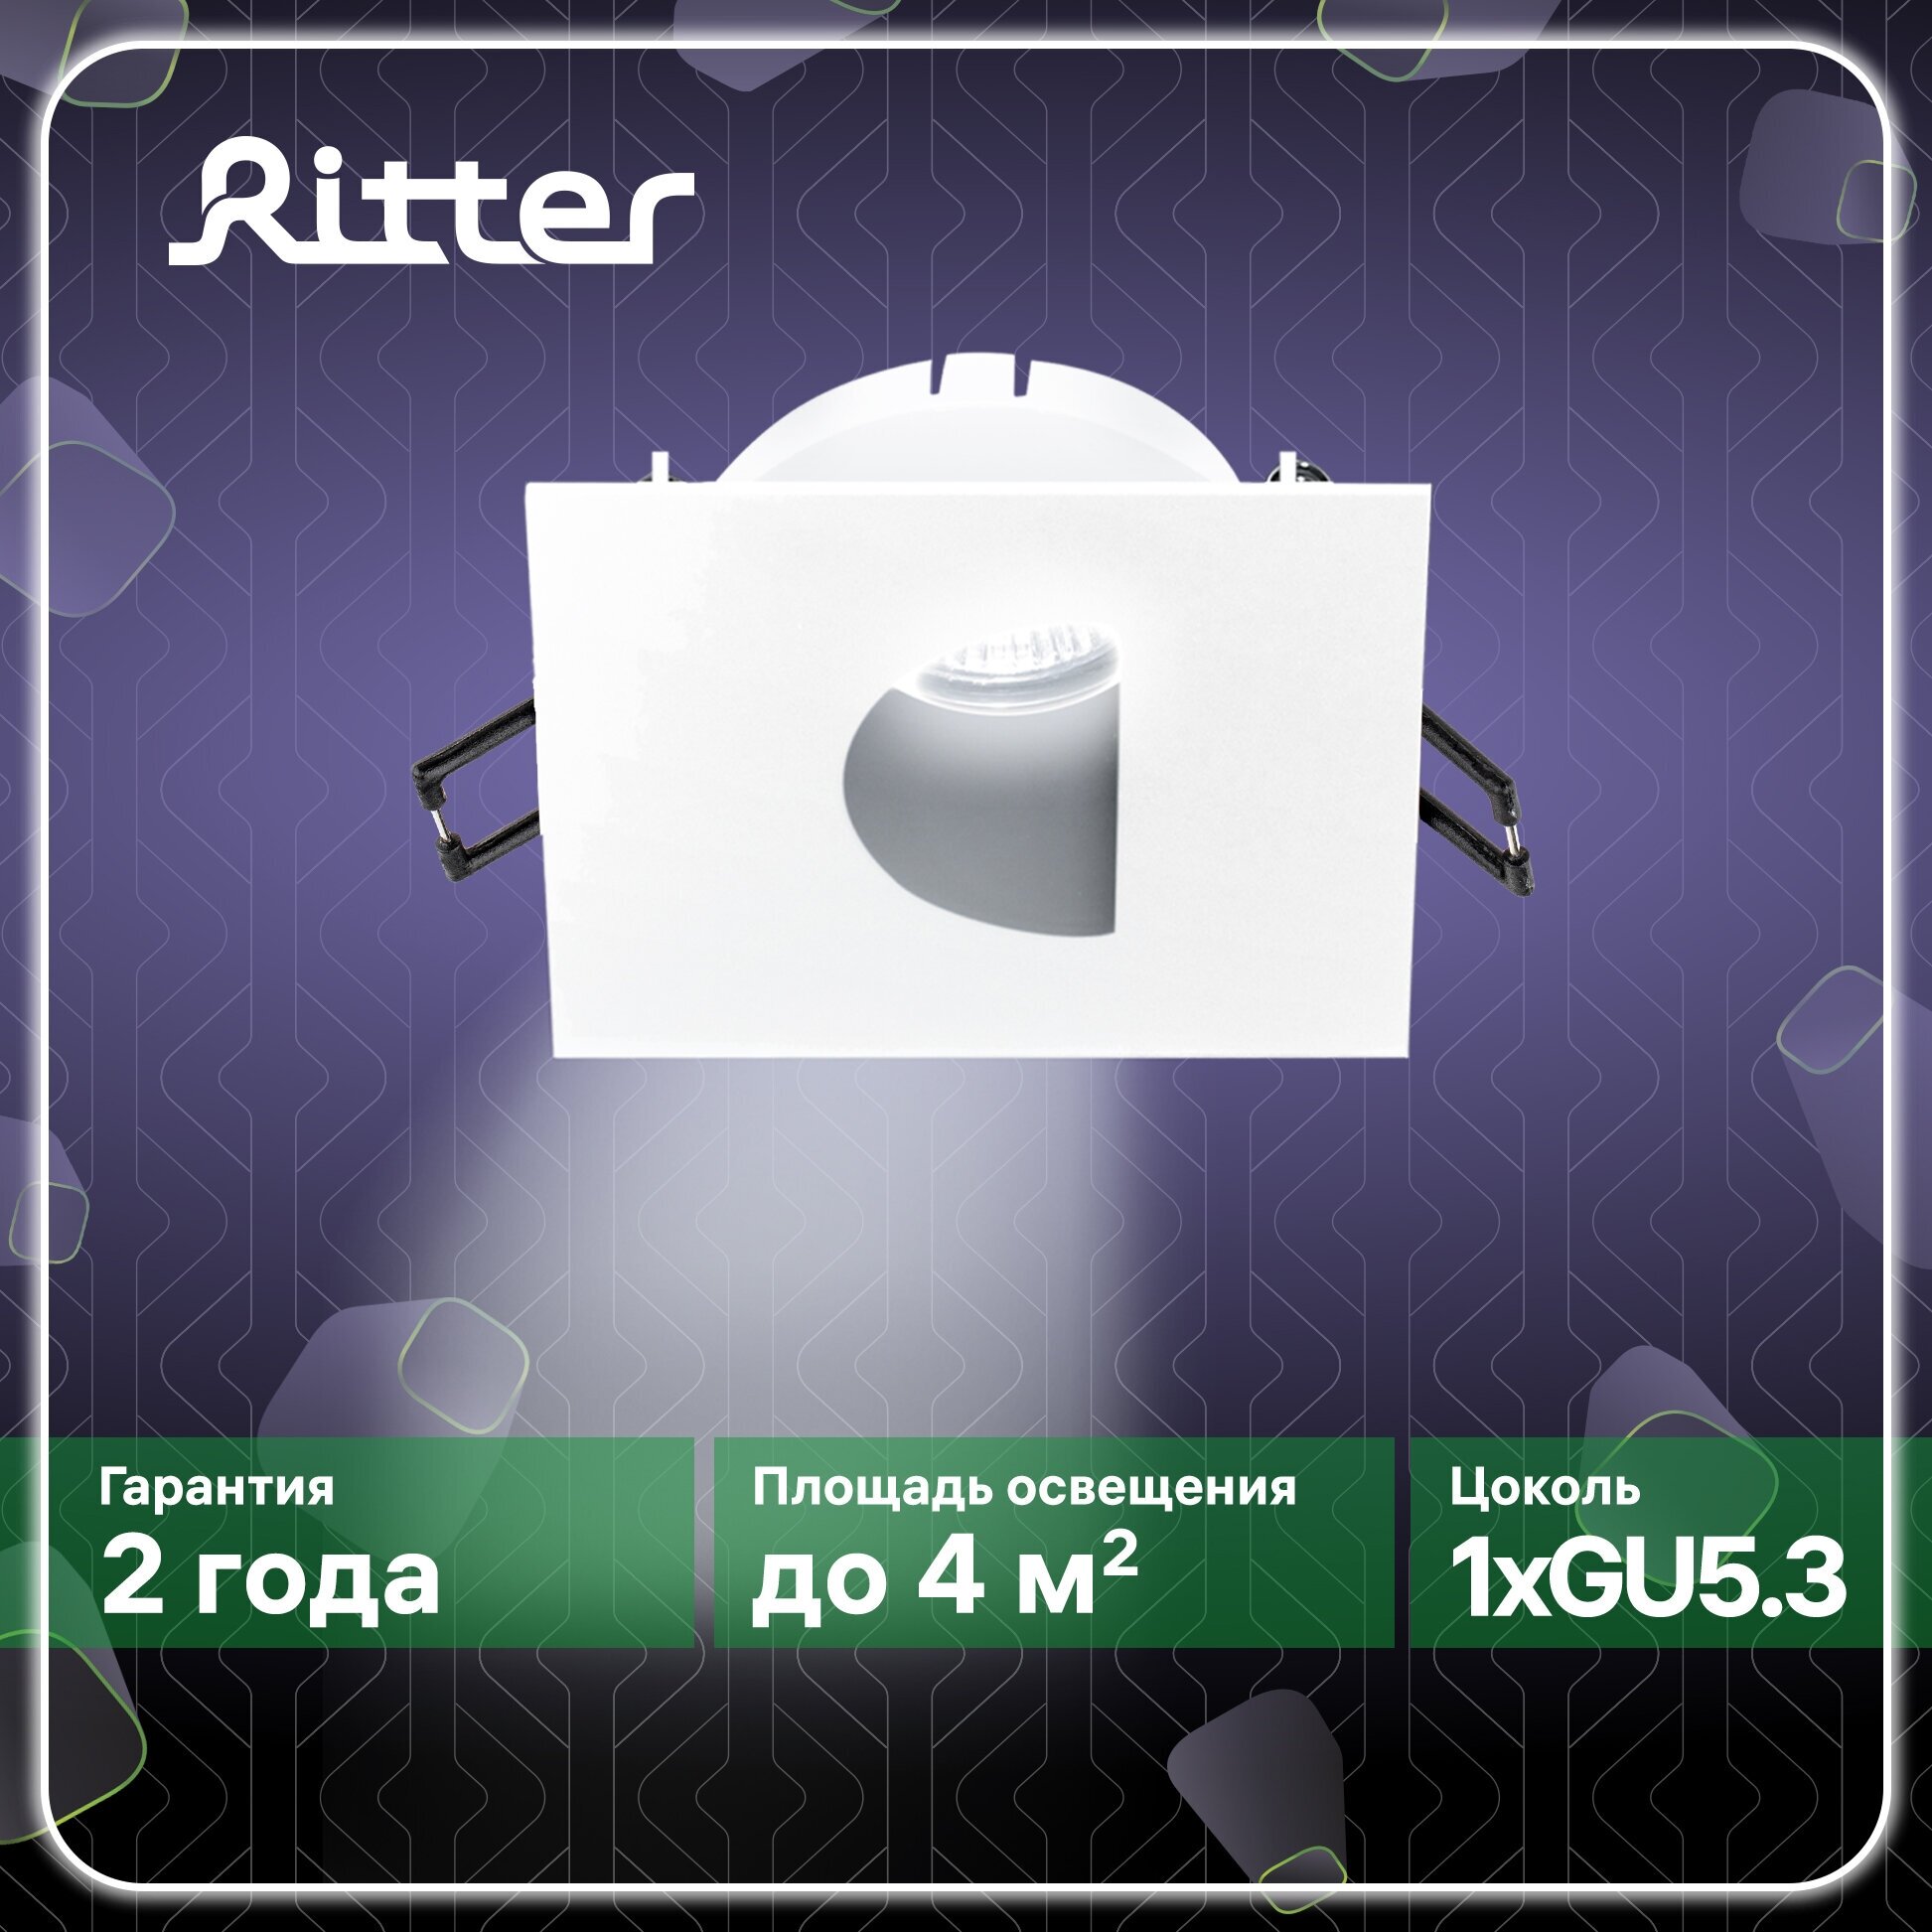 Светильник встраиваемый потолочный Artin, 87х87х38мм, монтажное отверстие 75х75мм, GU5.3, алюминий, белый, Ritter, 51433 6